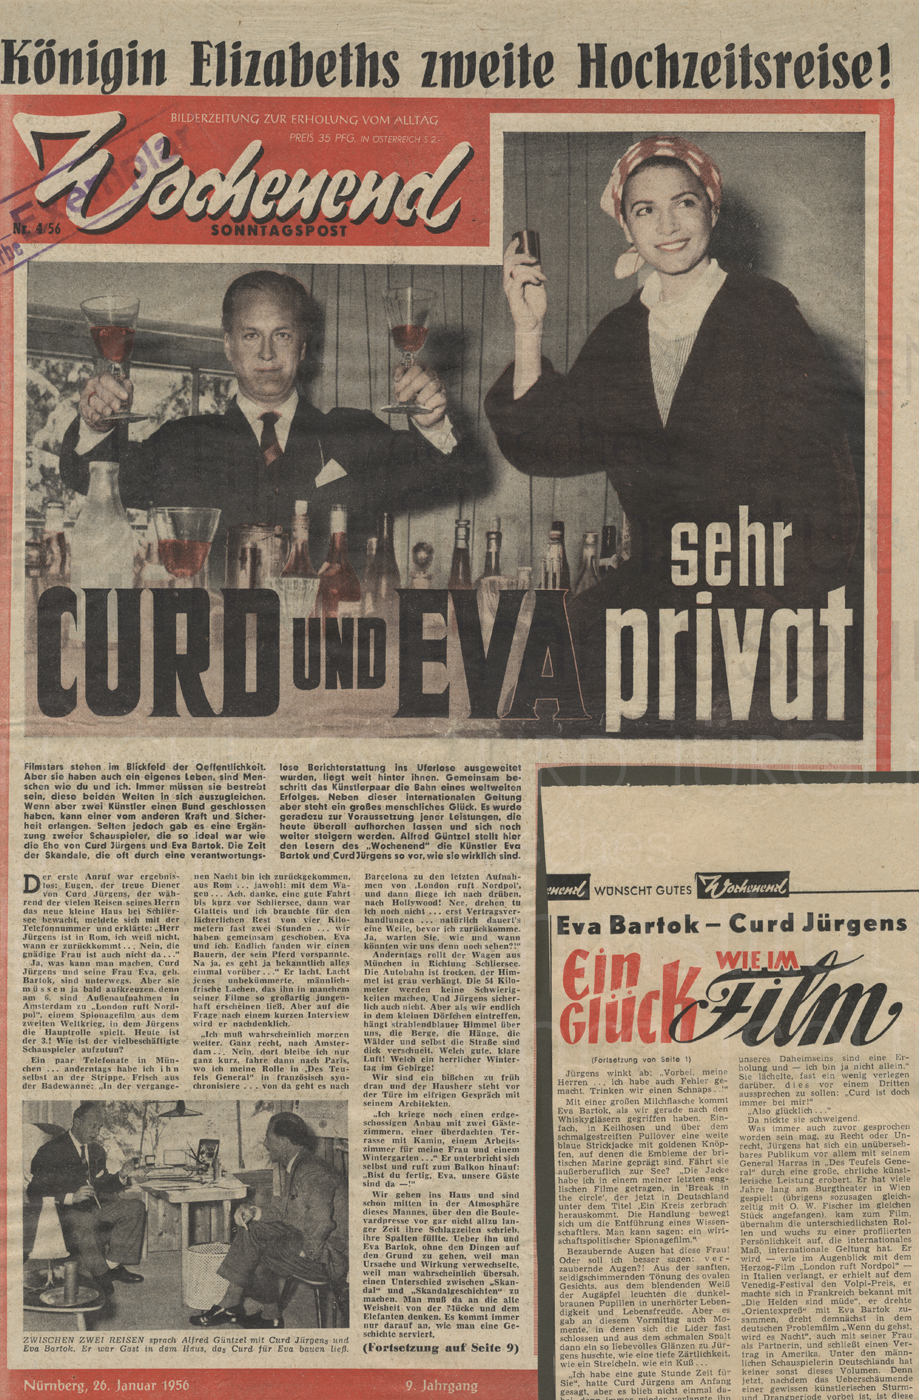 Wochenend Sonntagspost: "Curd und Eva sehr privat", 26.1.1956